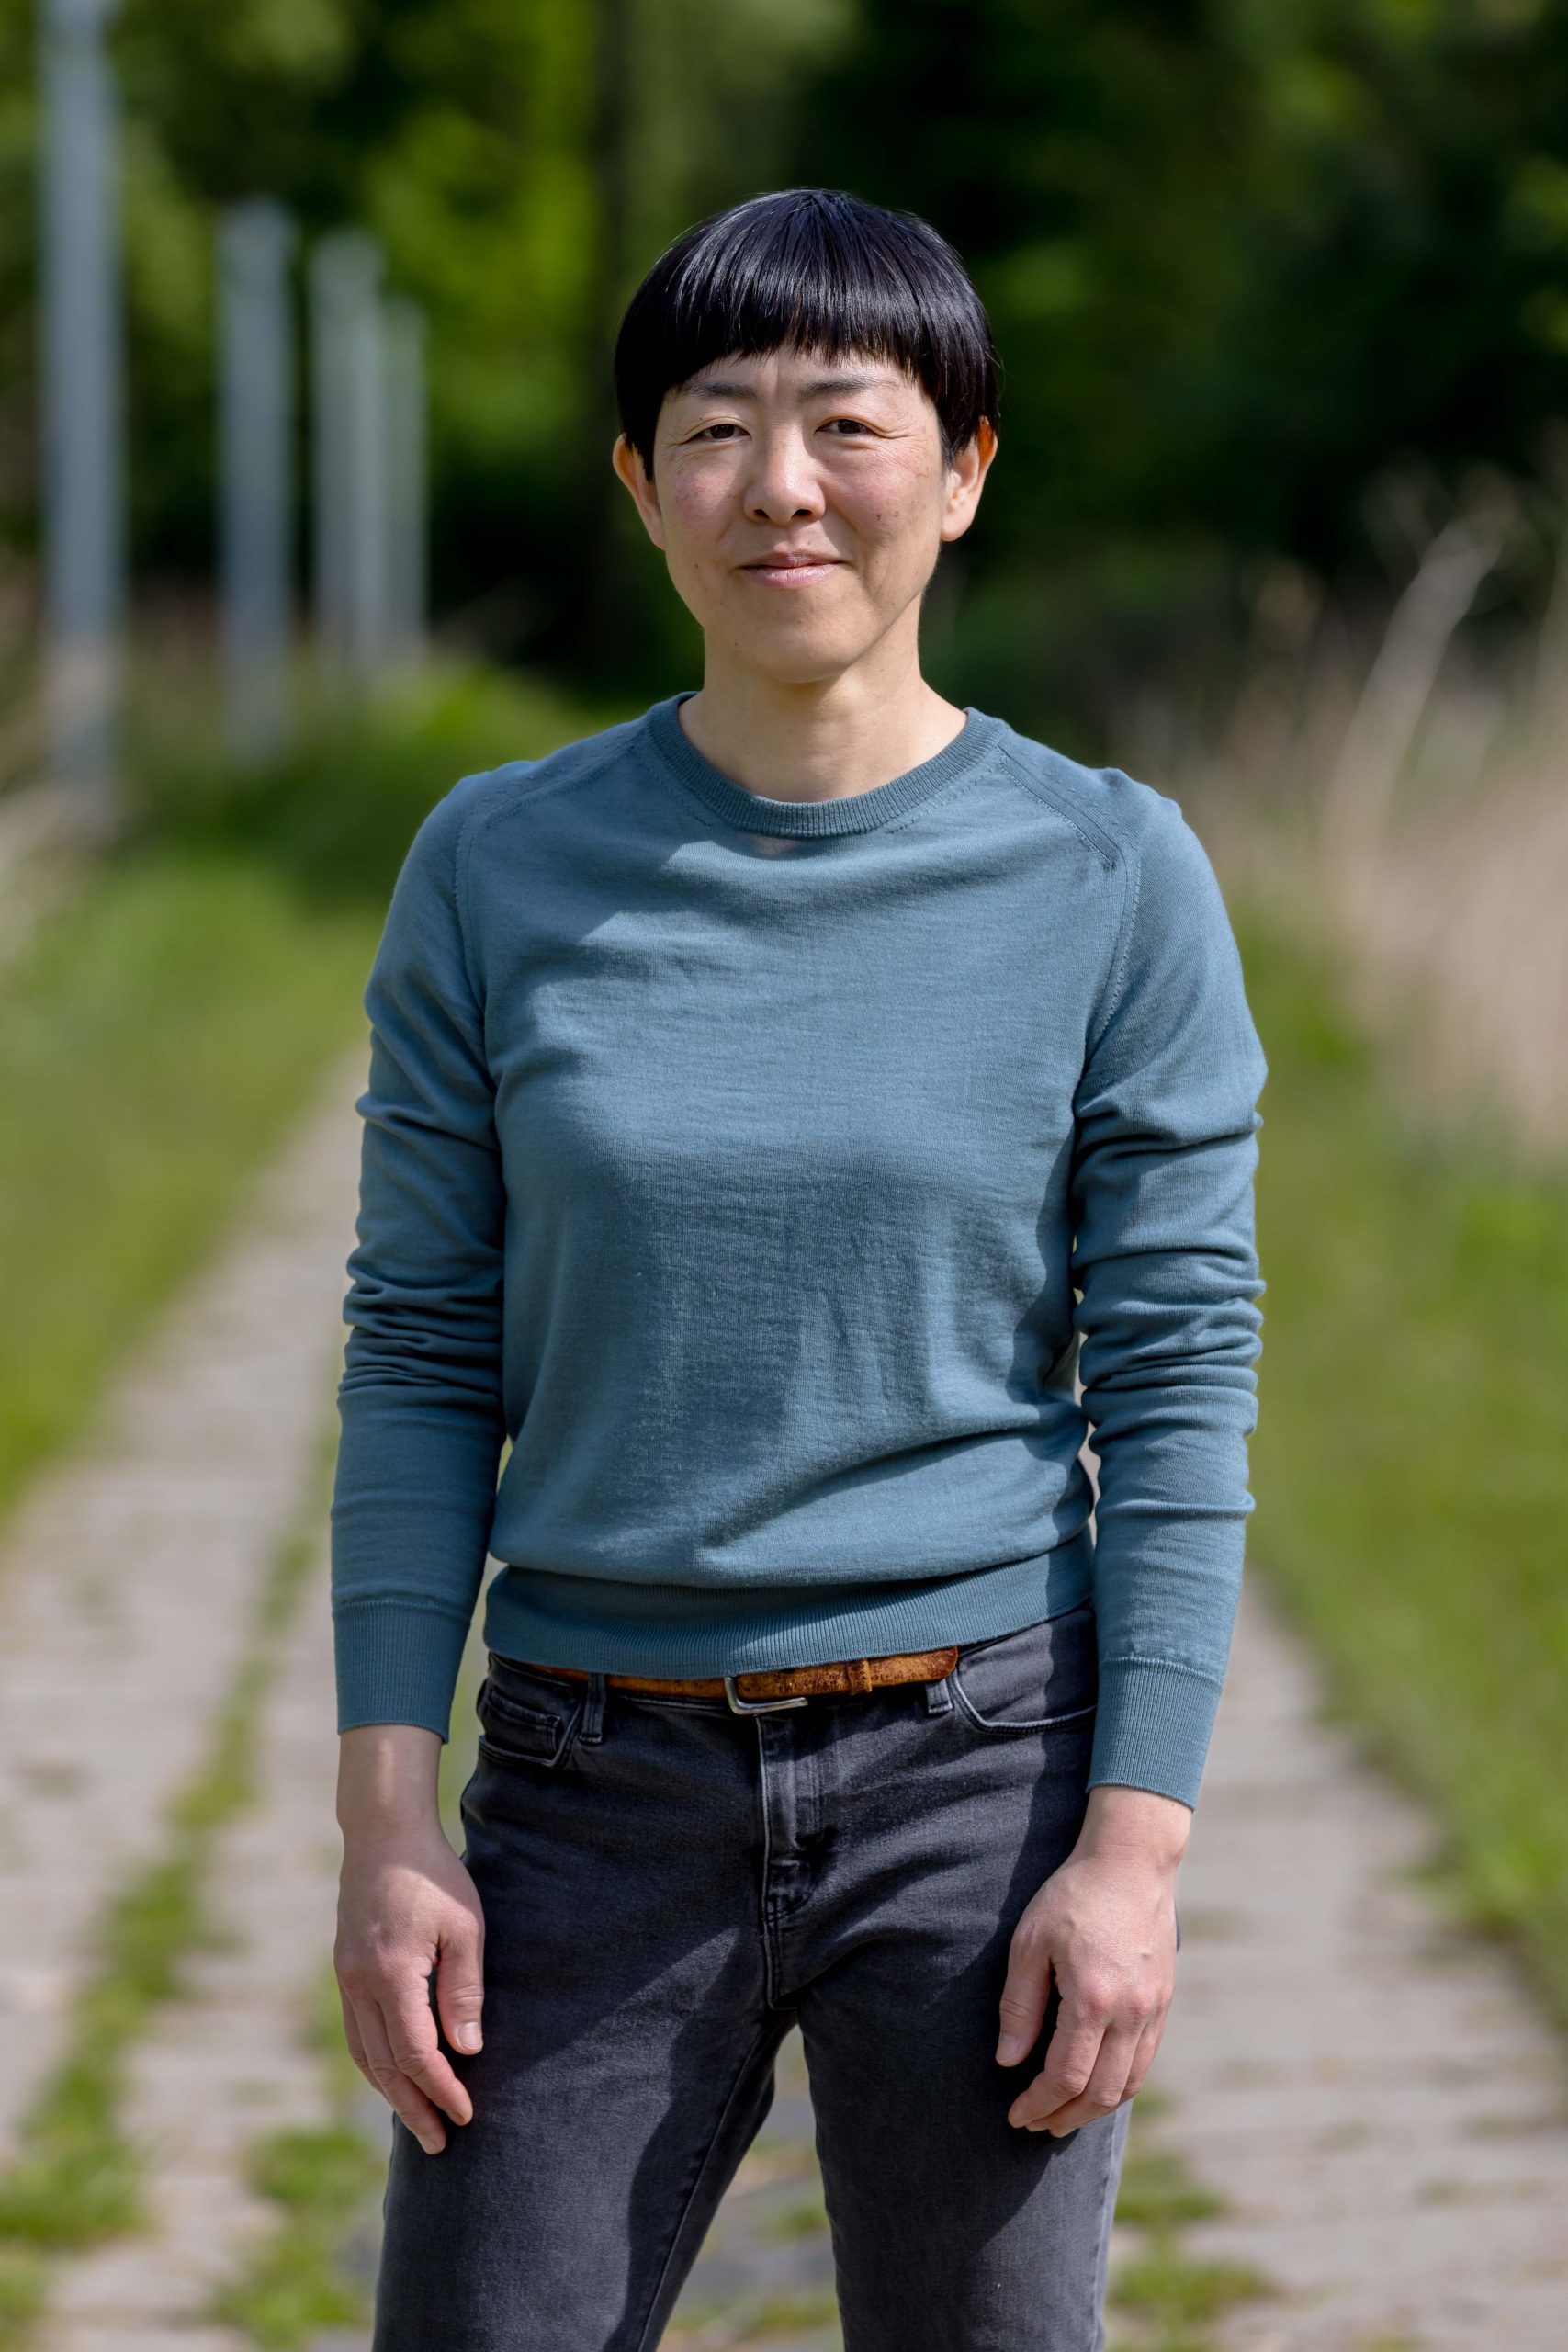 japanse vrouw met zwart haar en grauw blauw shirt en zwarte broek die recht in de camere kijkt. achtergrond van gras en beton